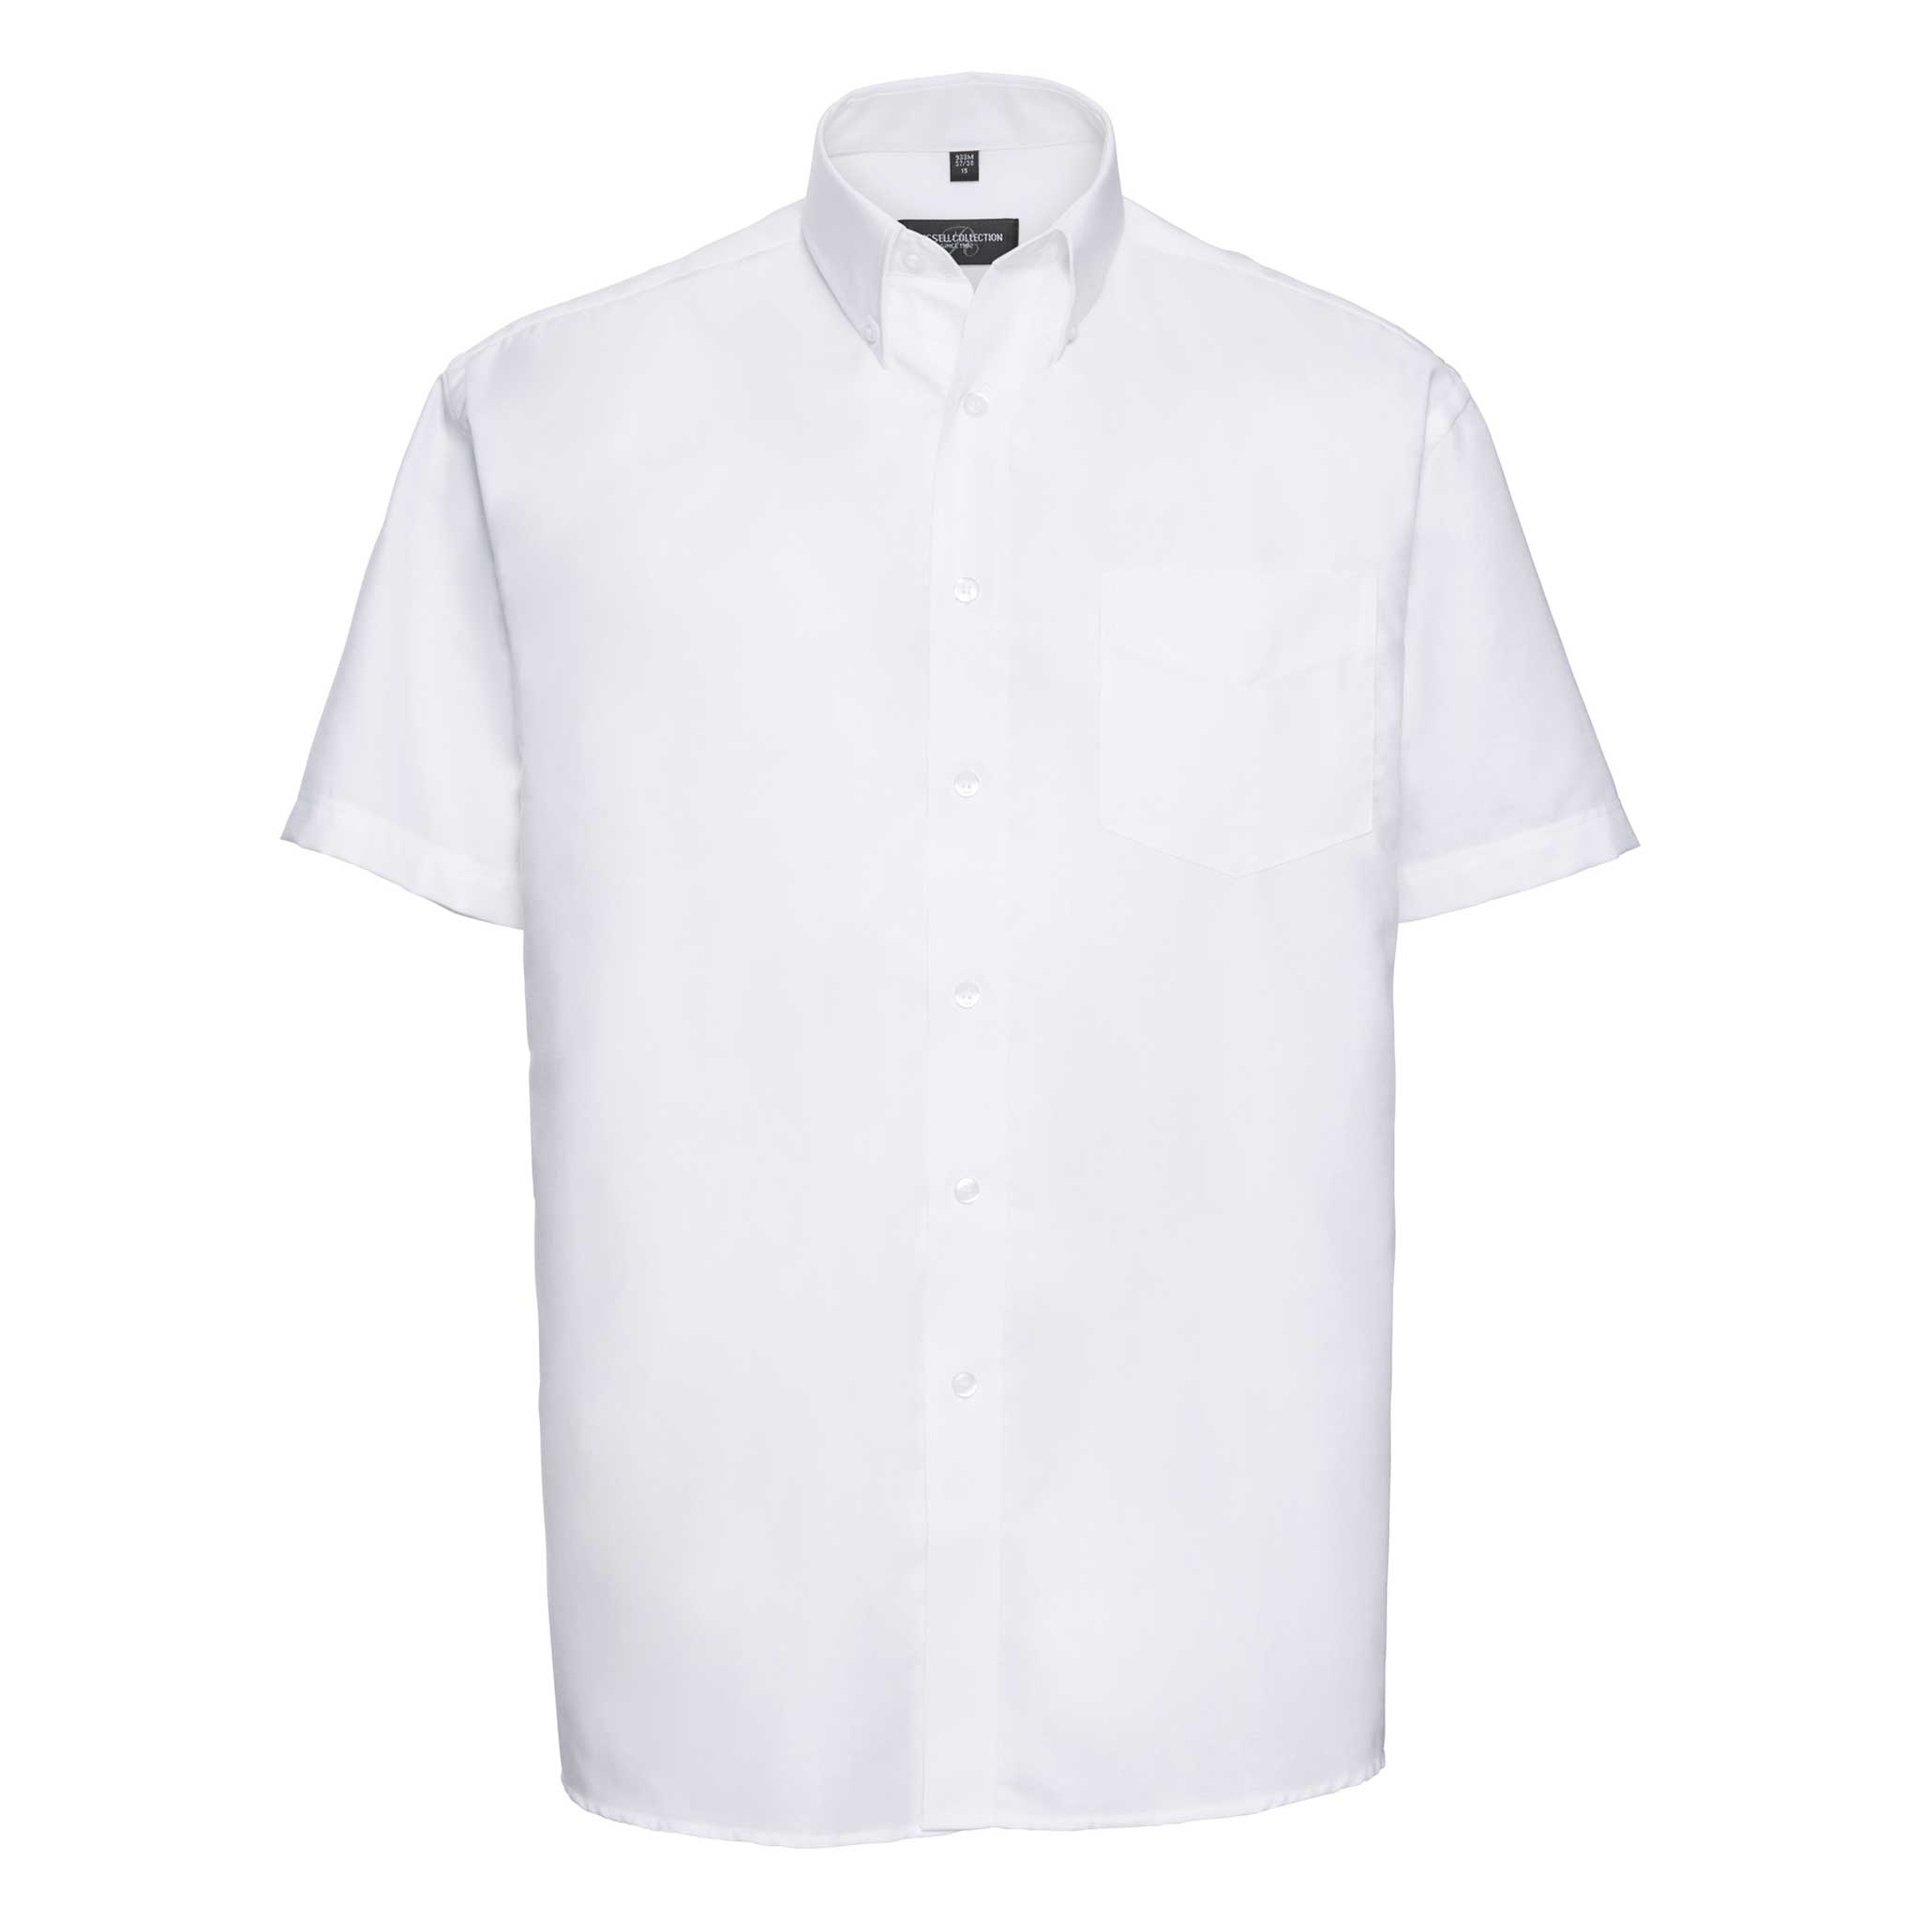 Distinguished Men's Short Sleeve Oxford Shirt